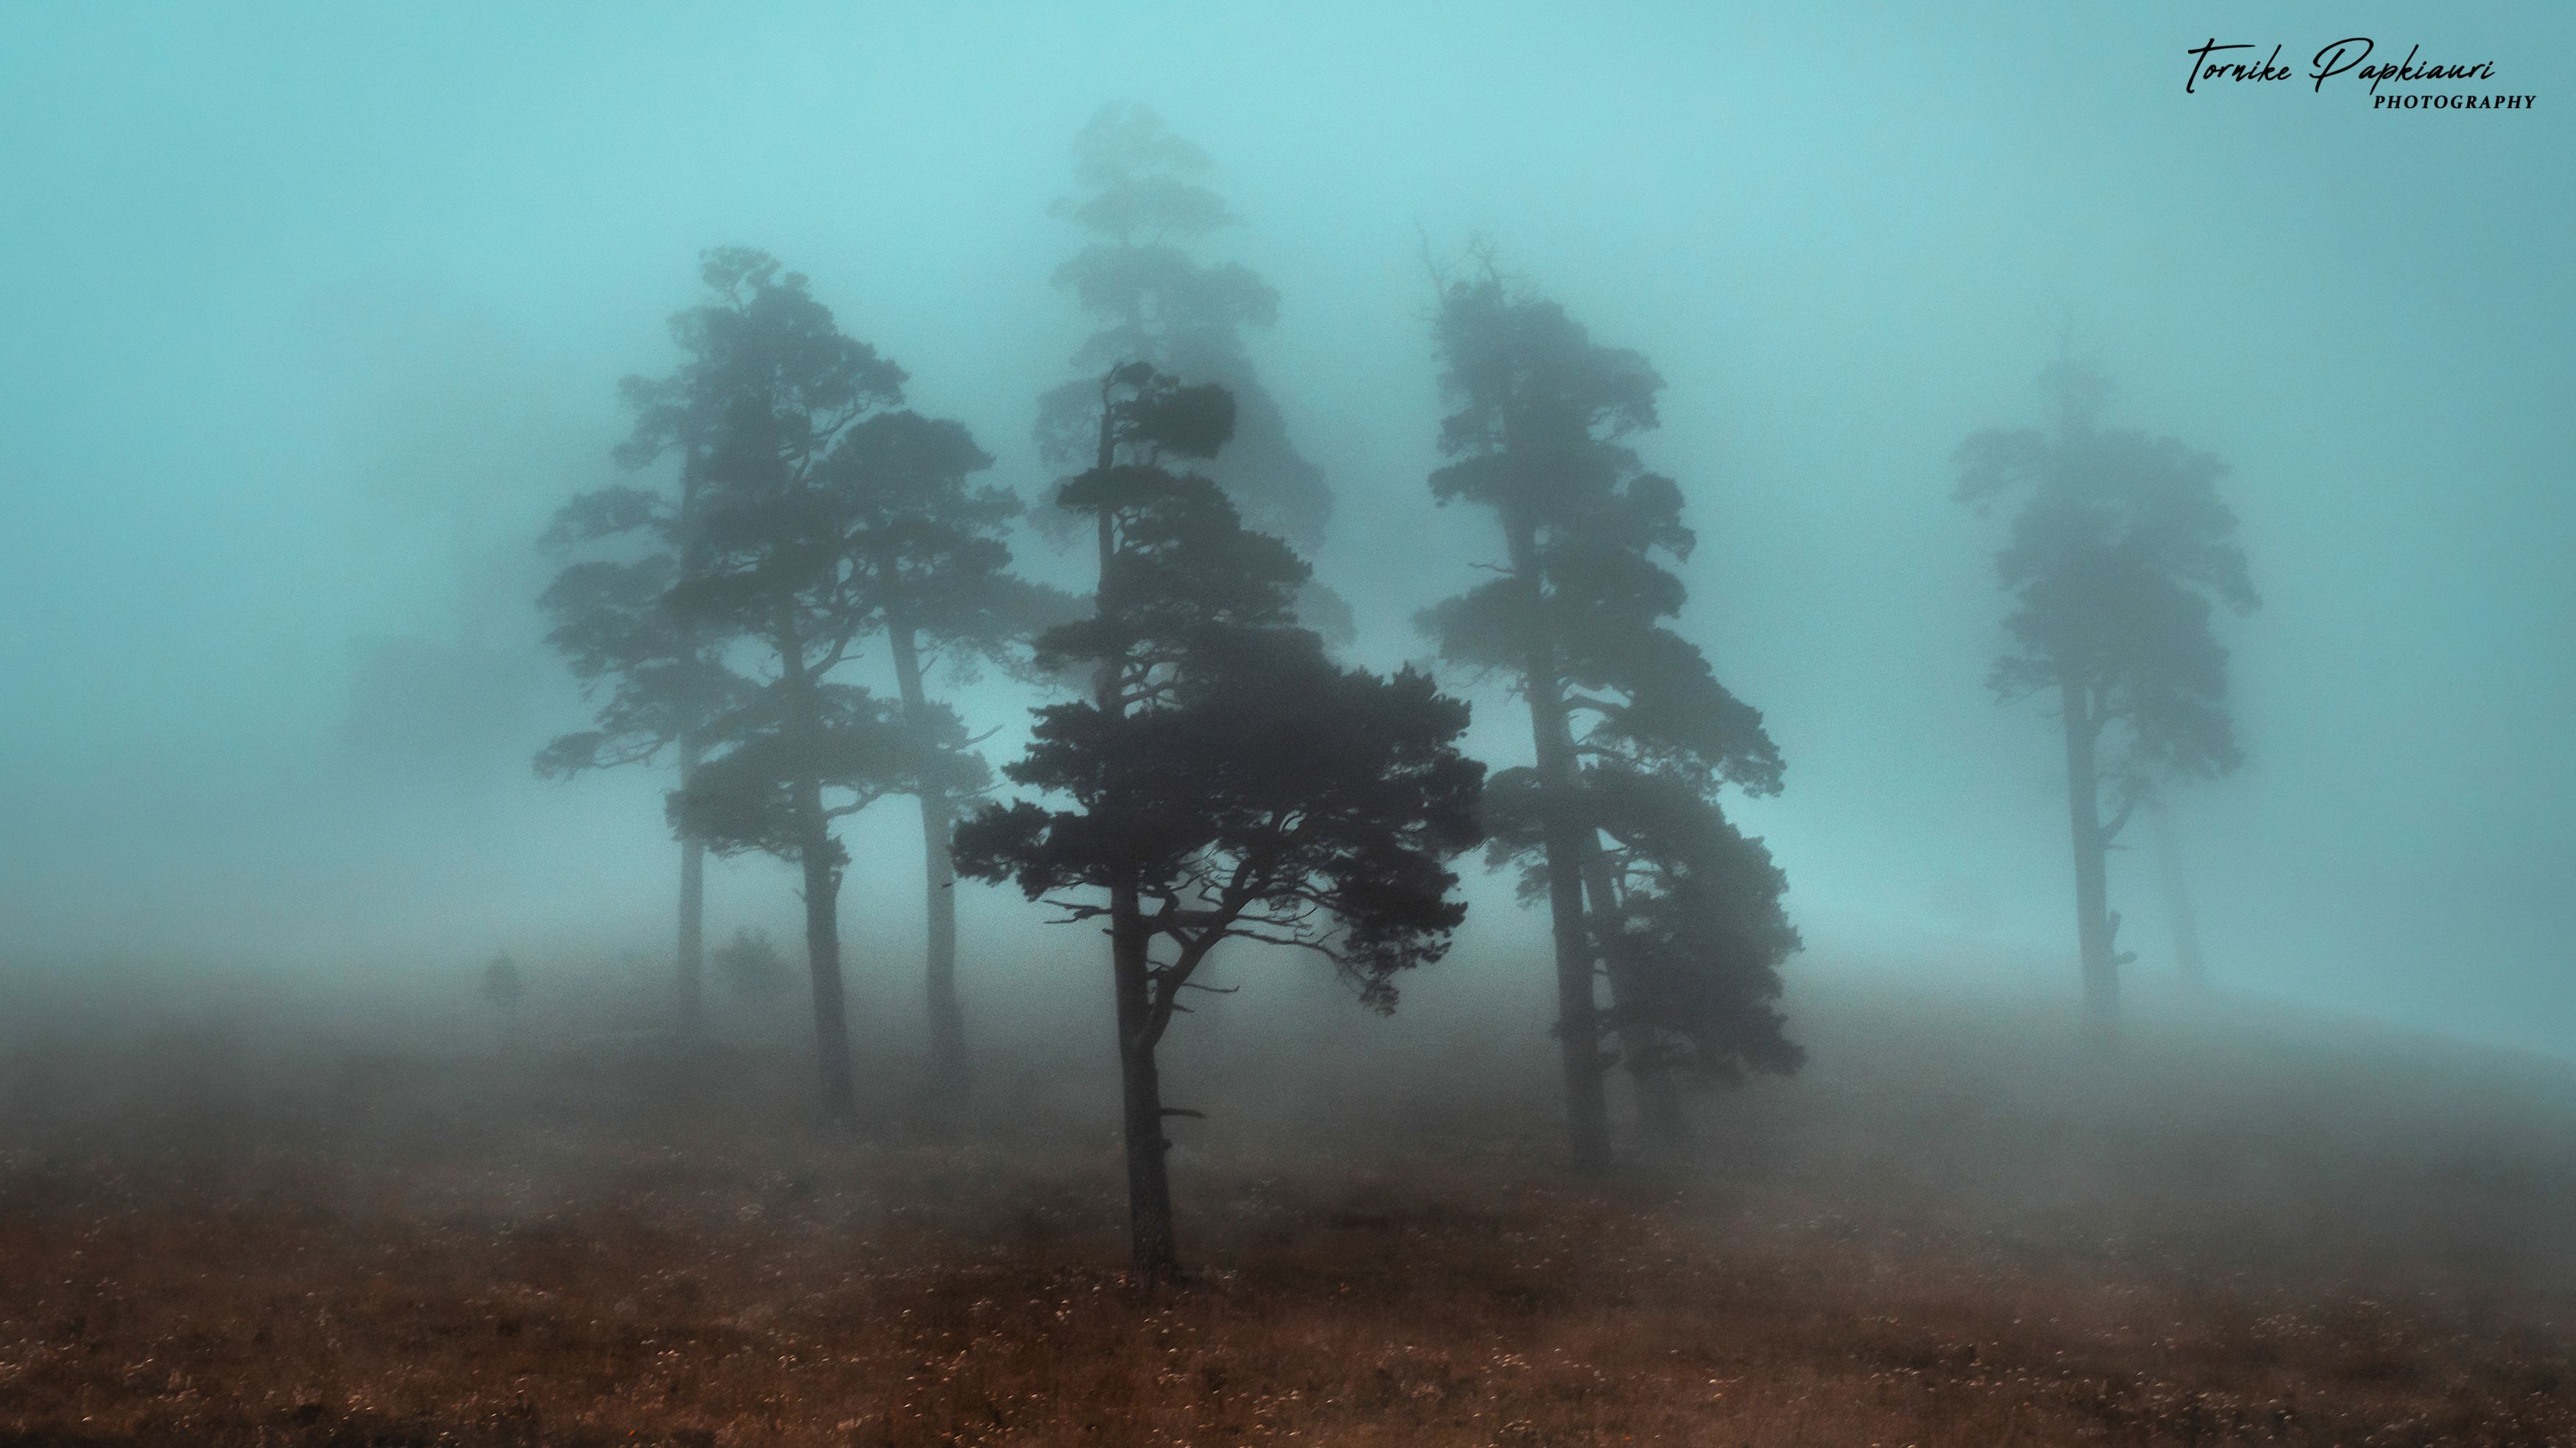 landscape, georgia, tree, mist, fog, PAPKIAURI TORNIKE